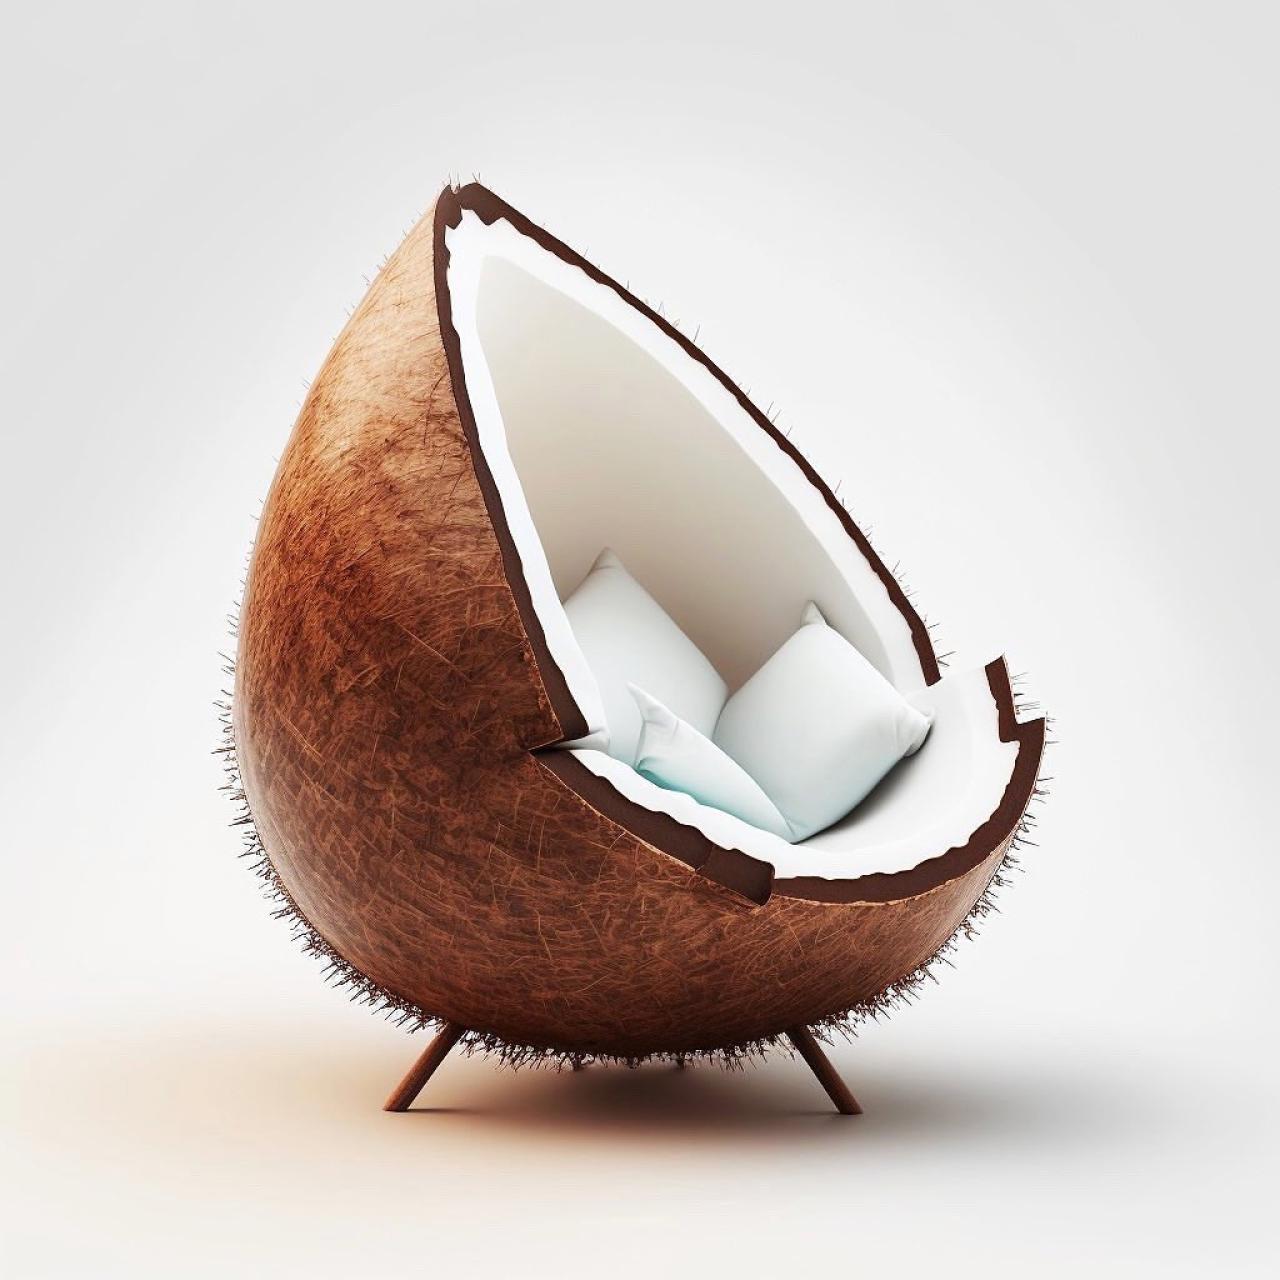 Kokos fotelja - Ljeto u stanu tijekom cijele godine - kokos fotelje osvojile su društvene mreže 